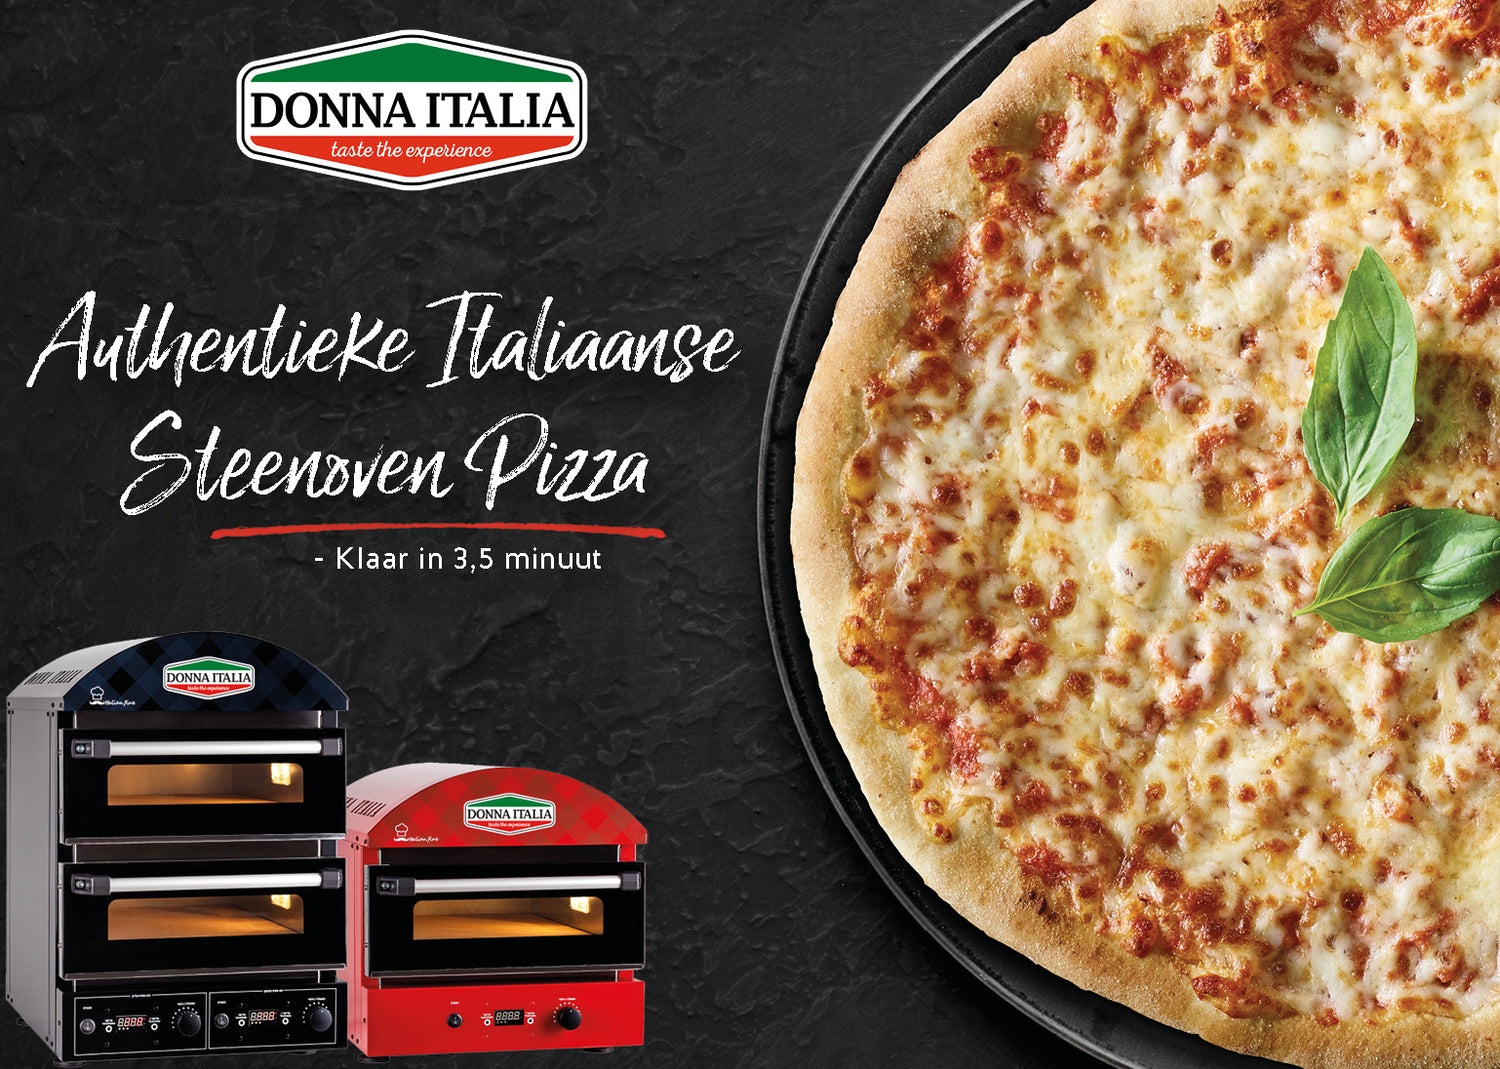 Een overheerlijke authentieke Italiaanse steenoven pizza van Donna Italia, versierd met een blaadje basilicum, klaar in 3,5 minuut, getoond naast twee modellen van Donna Italia steenovens in zwart en rood.